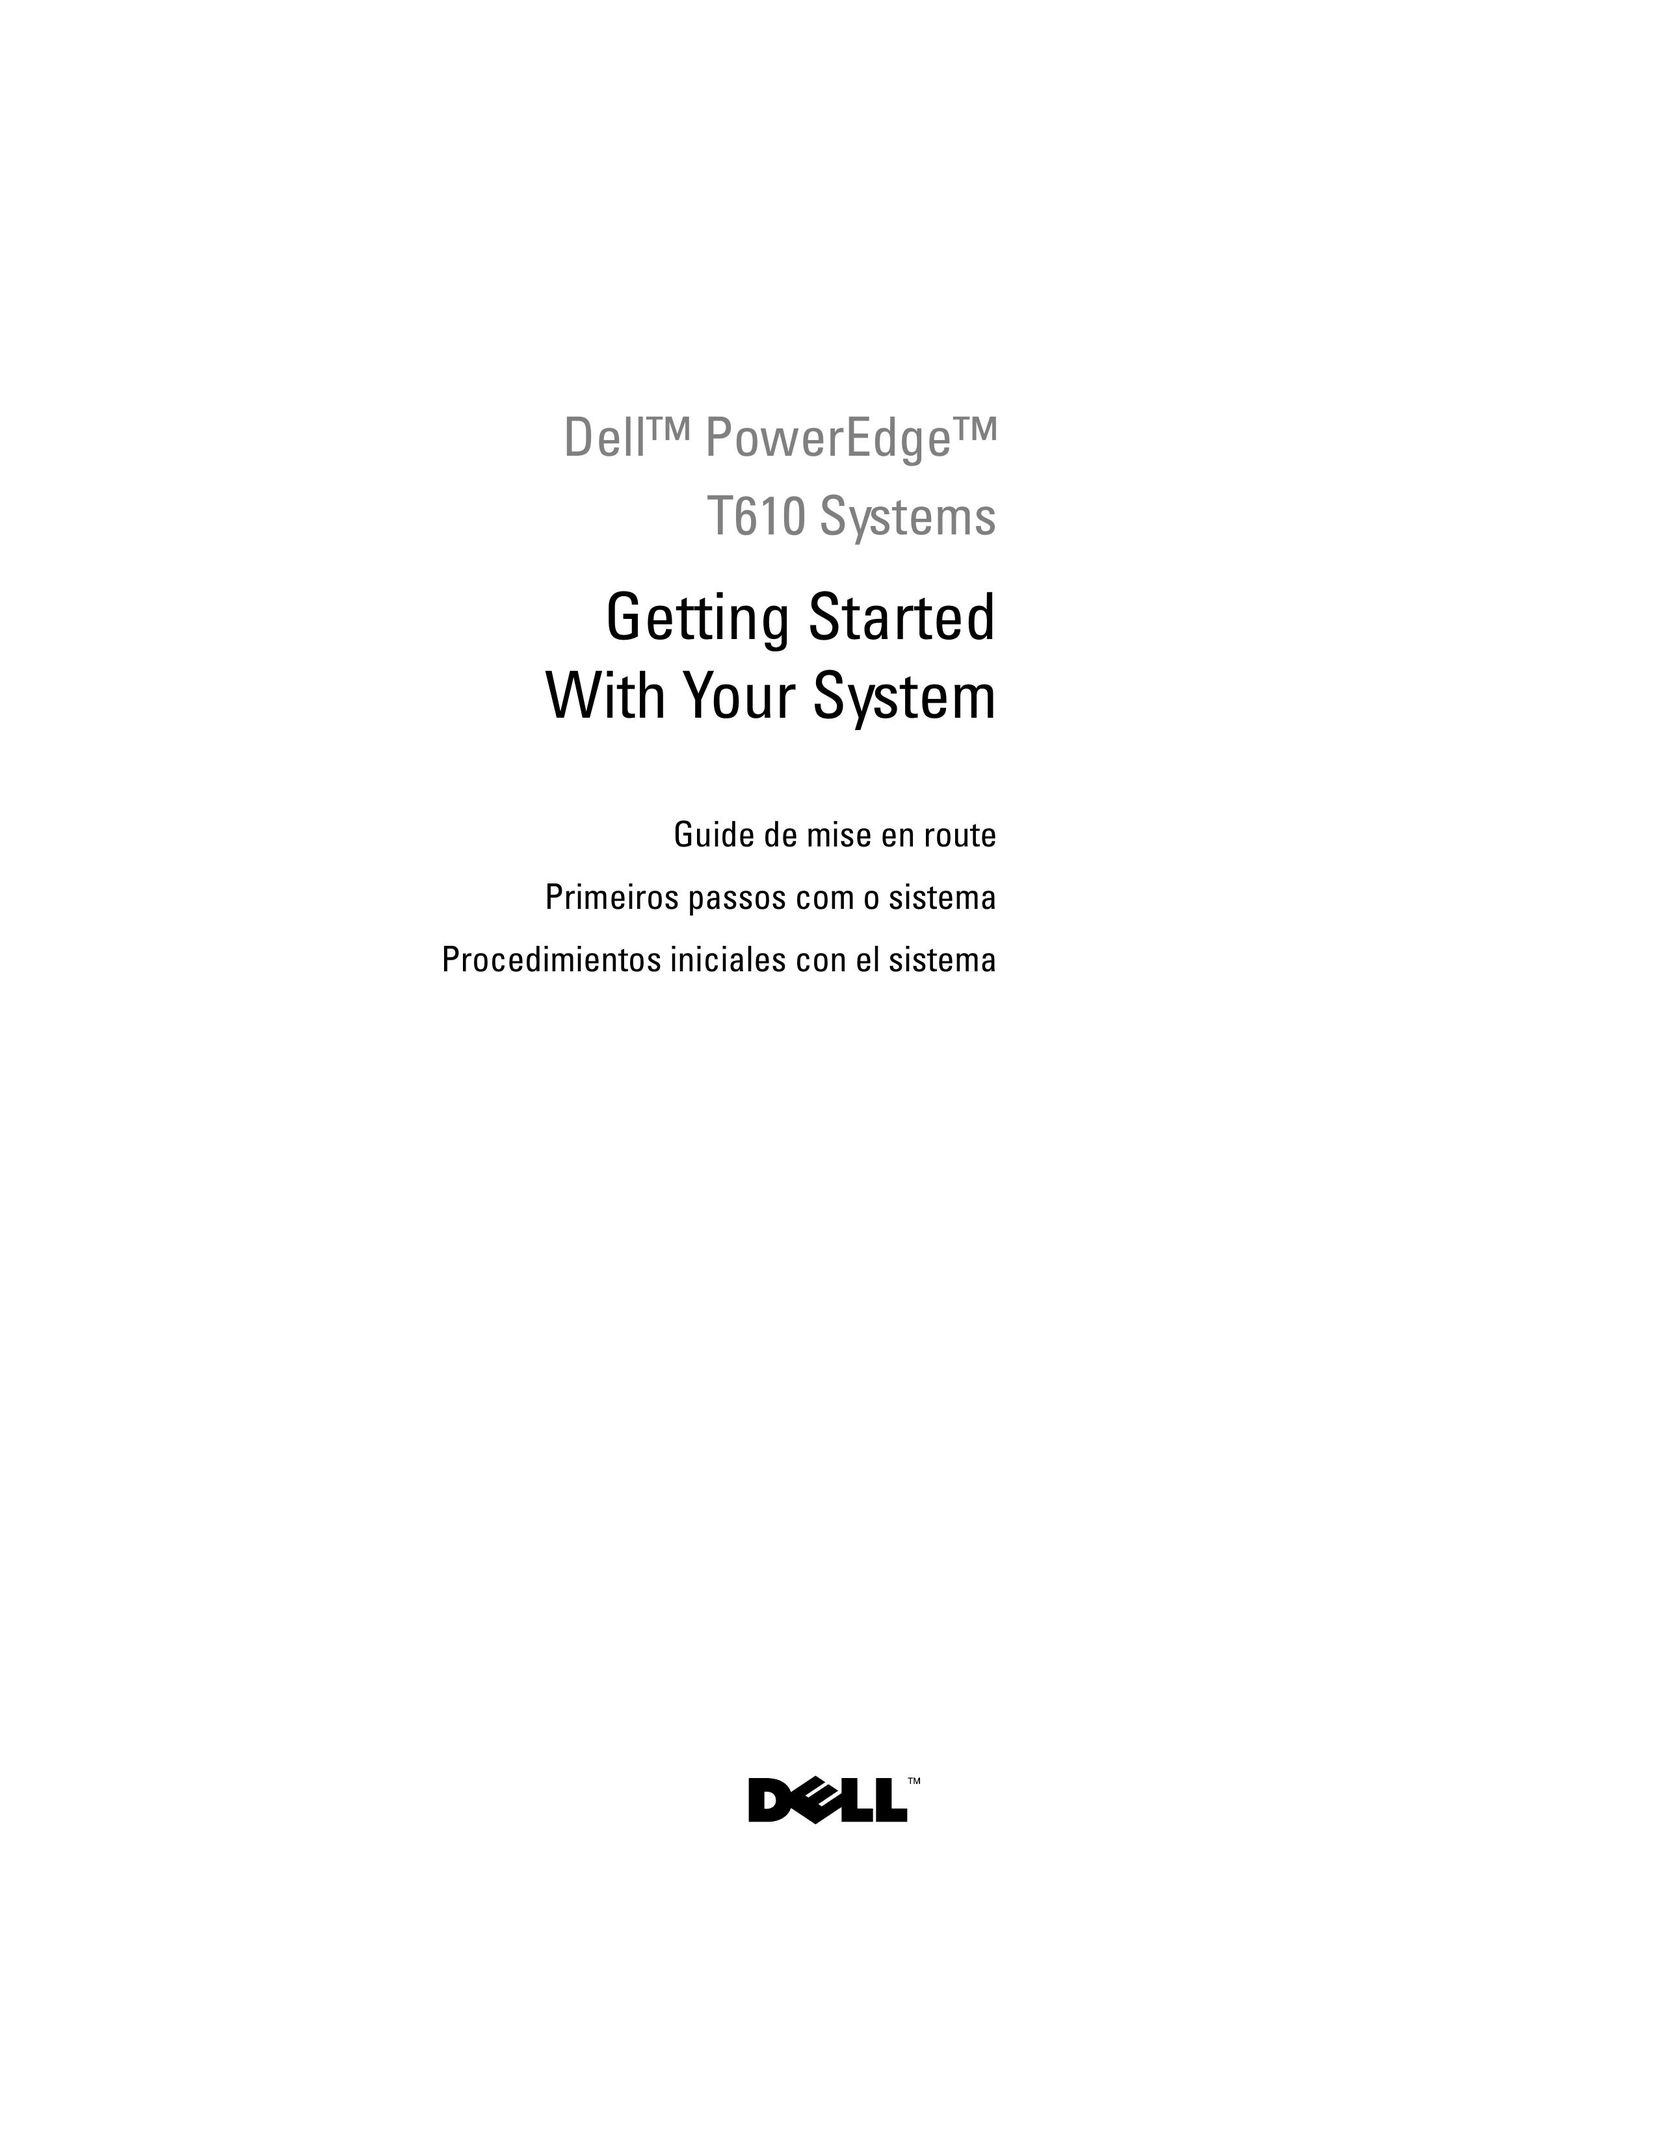 Dell E03S Server User Manual